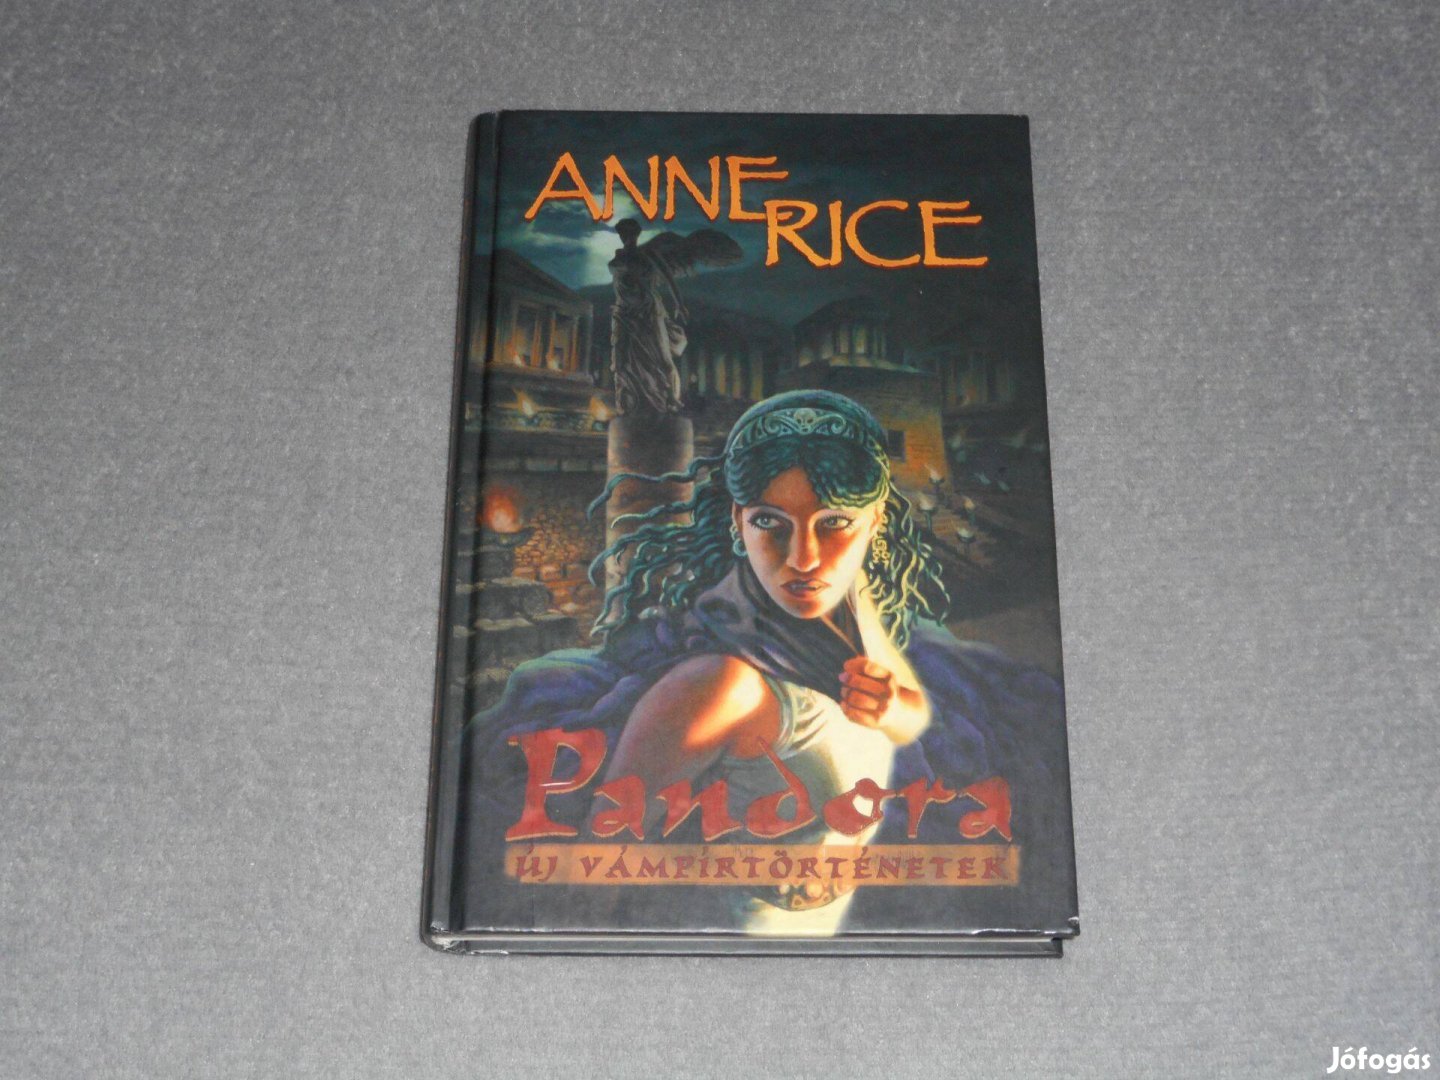 Anne Rice - Pandora - Új vámpírtörténetek (Ritka!)